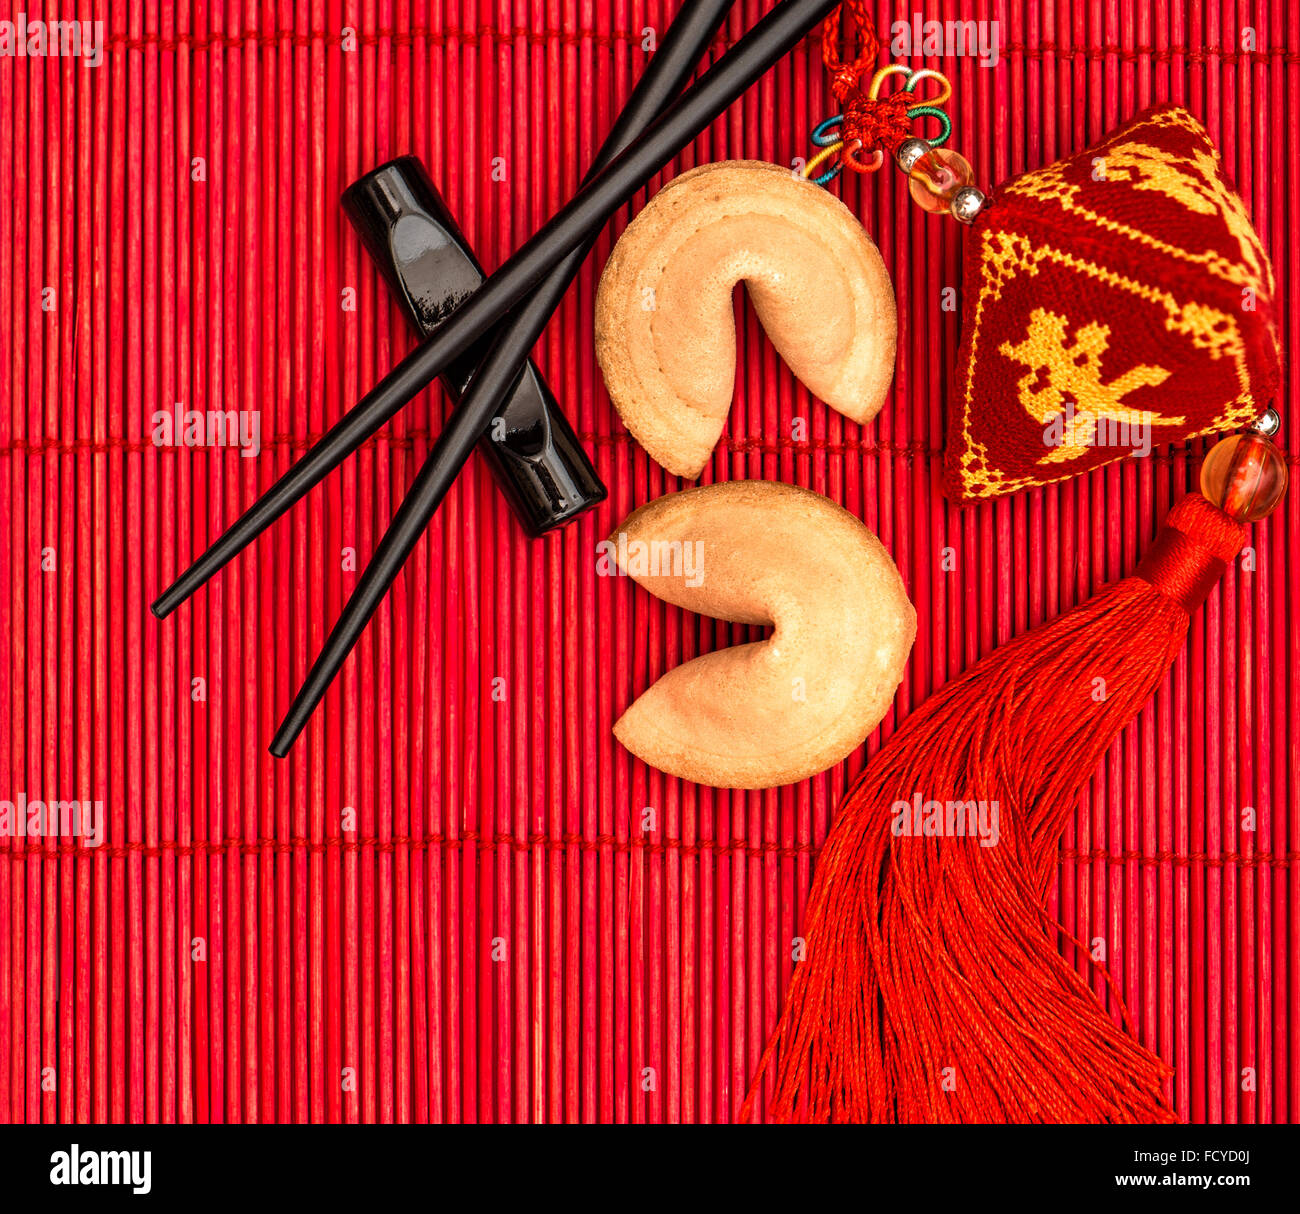 Nouvel an chinois porte-bonheur, fortune cookies et baguettes Banque D'Images